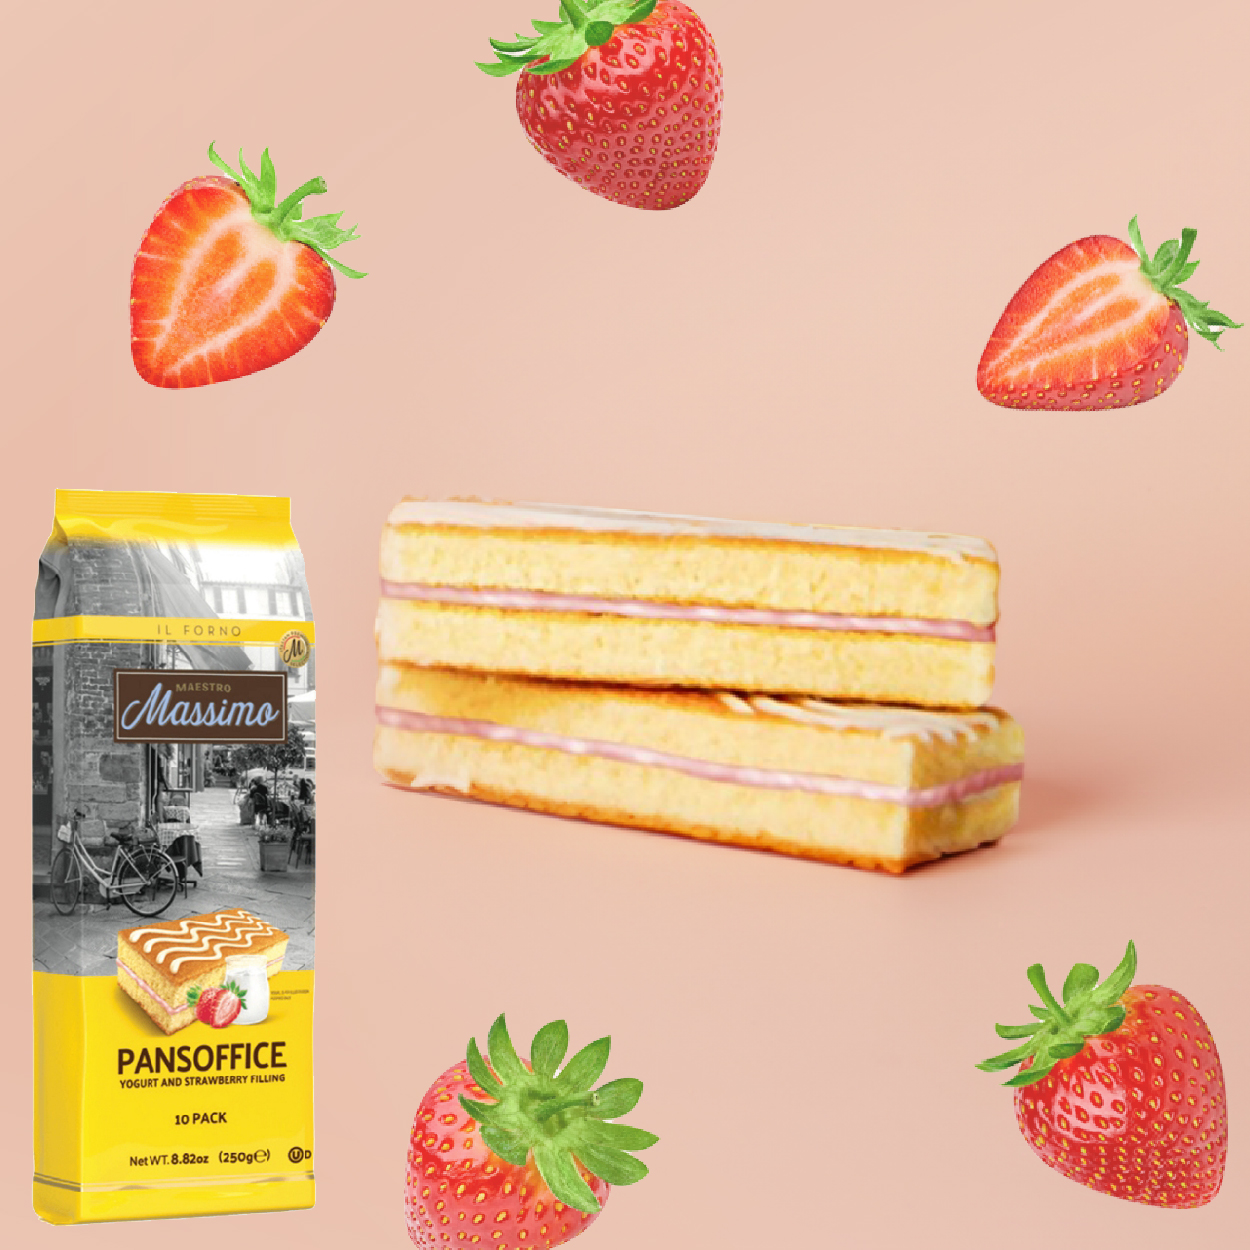 瑪西莫 草莓優格夾心蛋糕  對美味堅持百年的義大利品牌